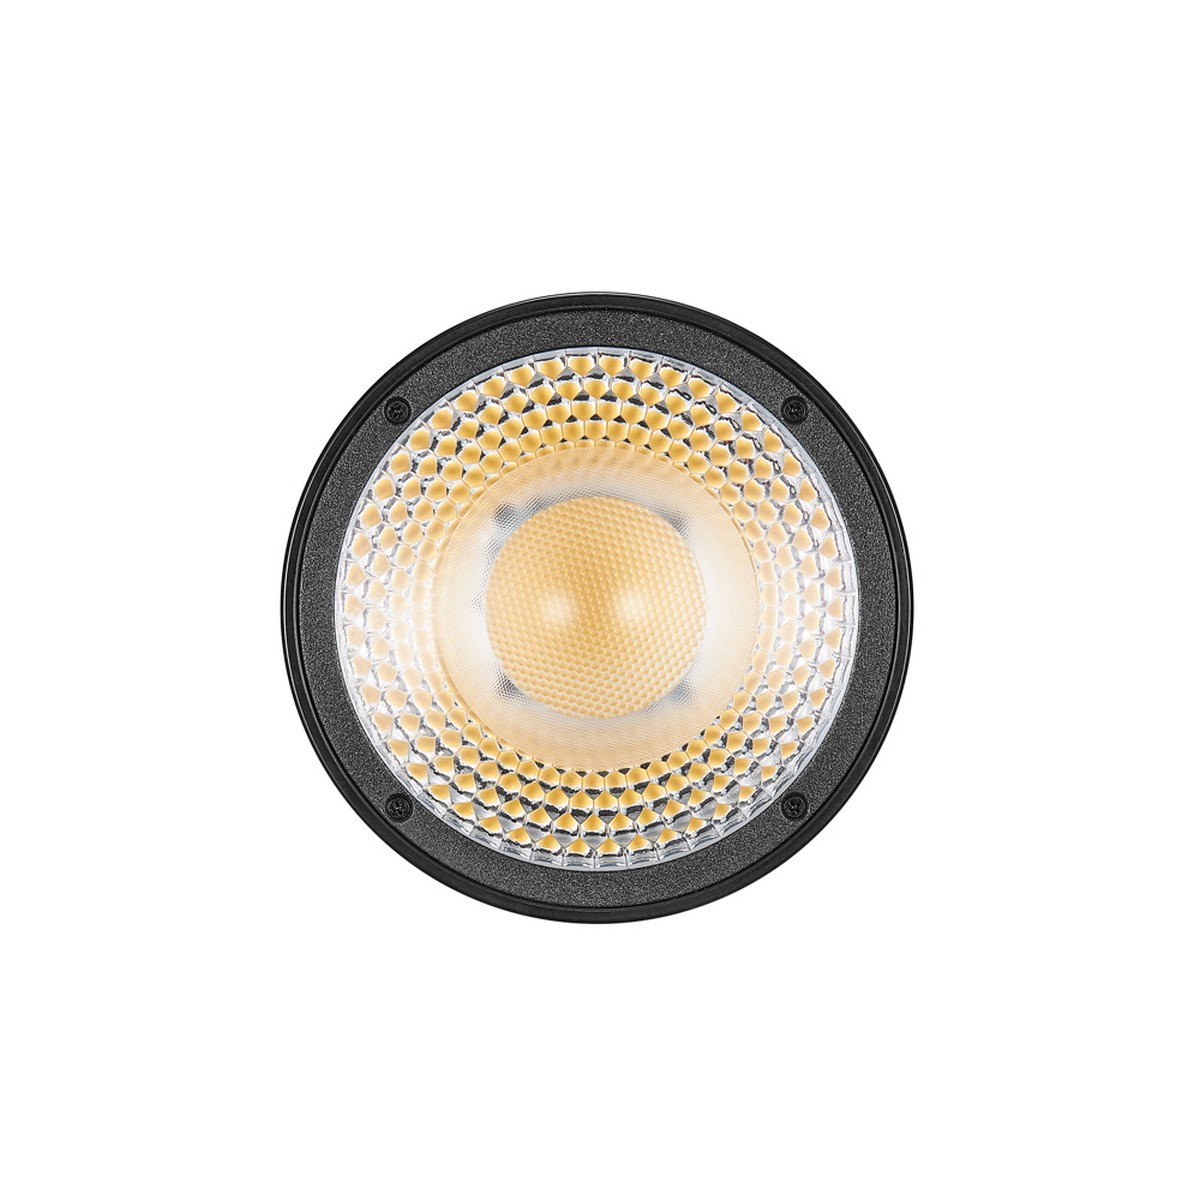 Godox LC30D Litemons LED-Tischvideoleuchte Daylight